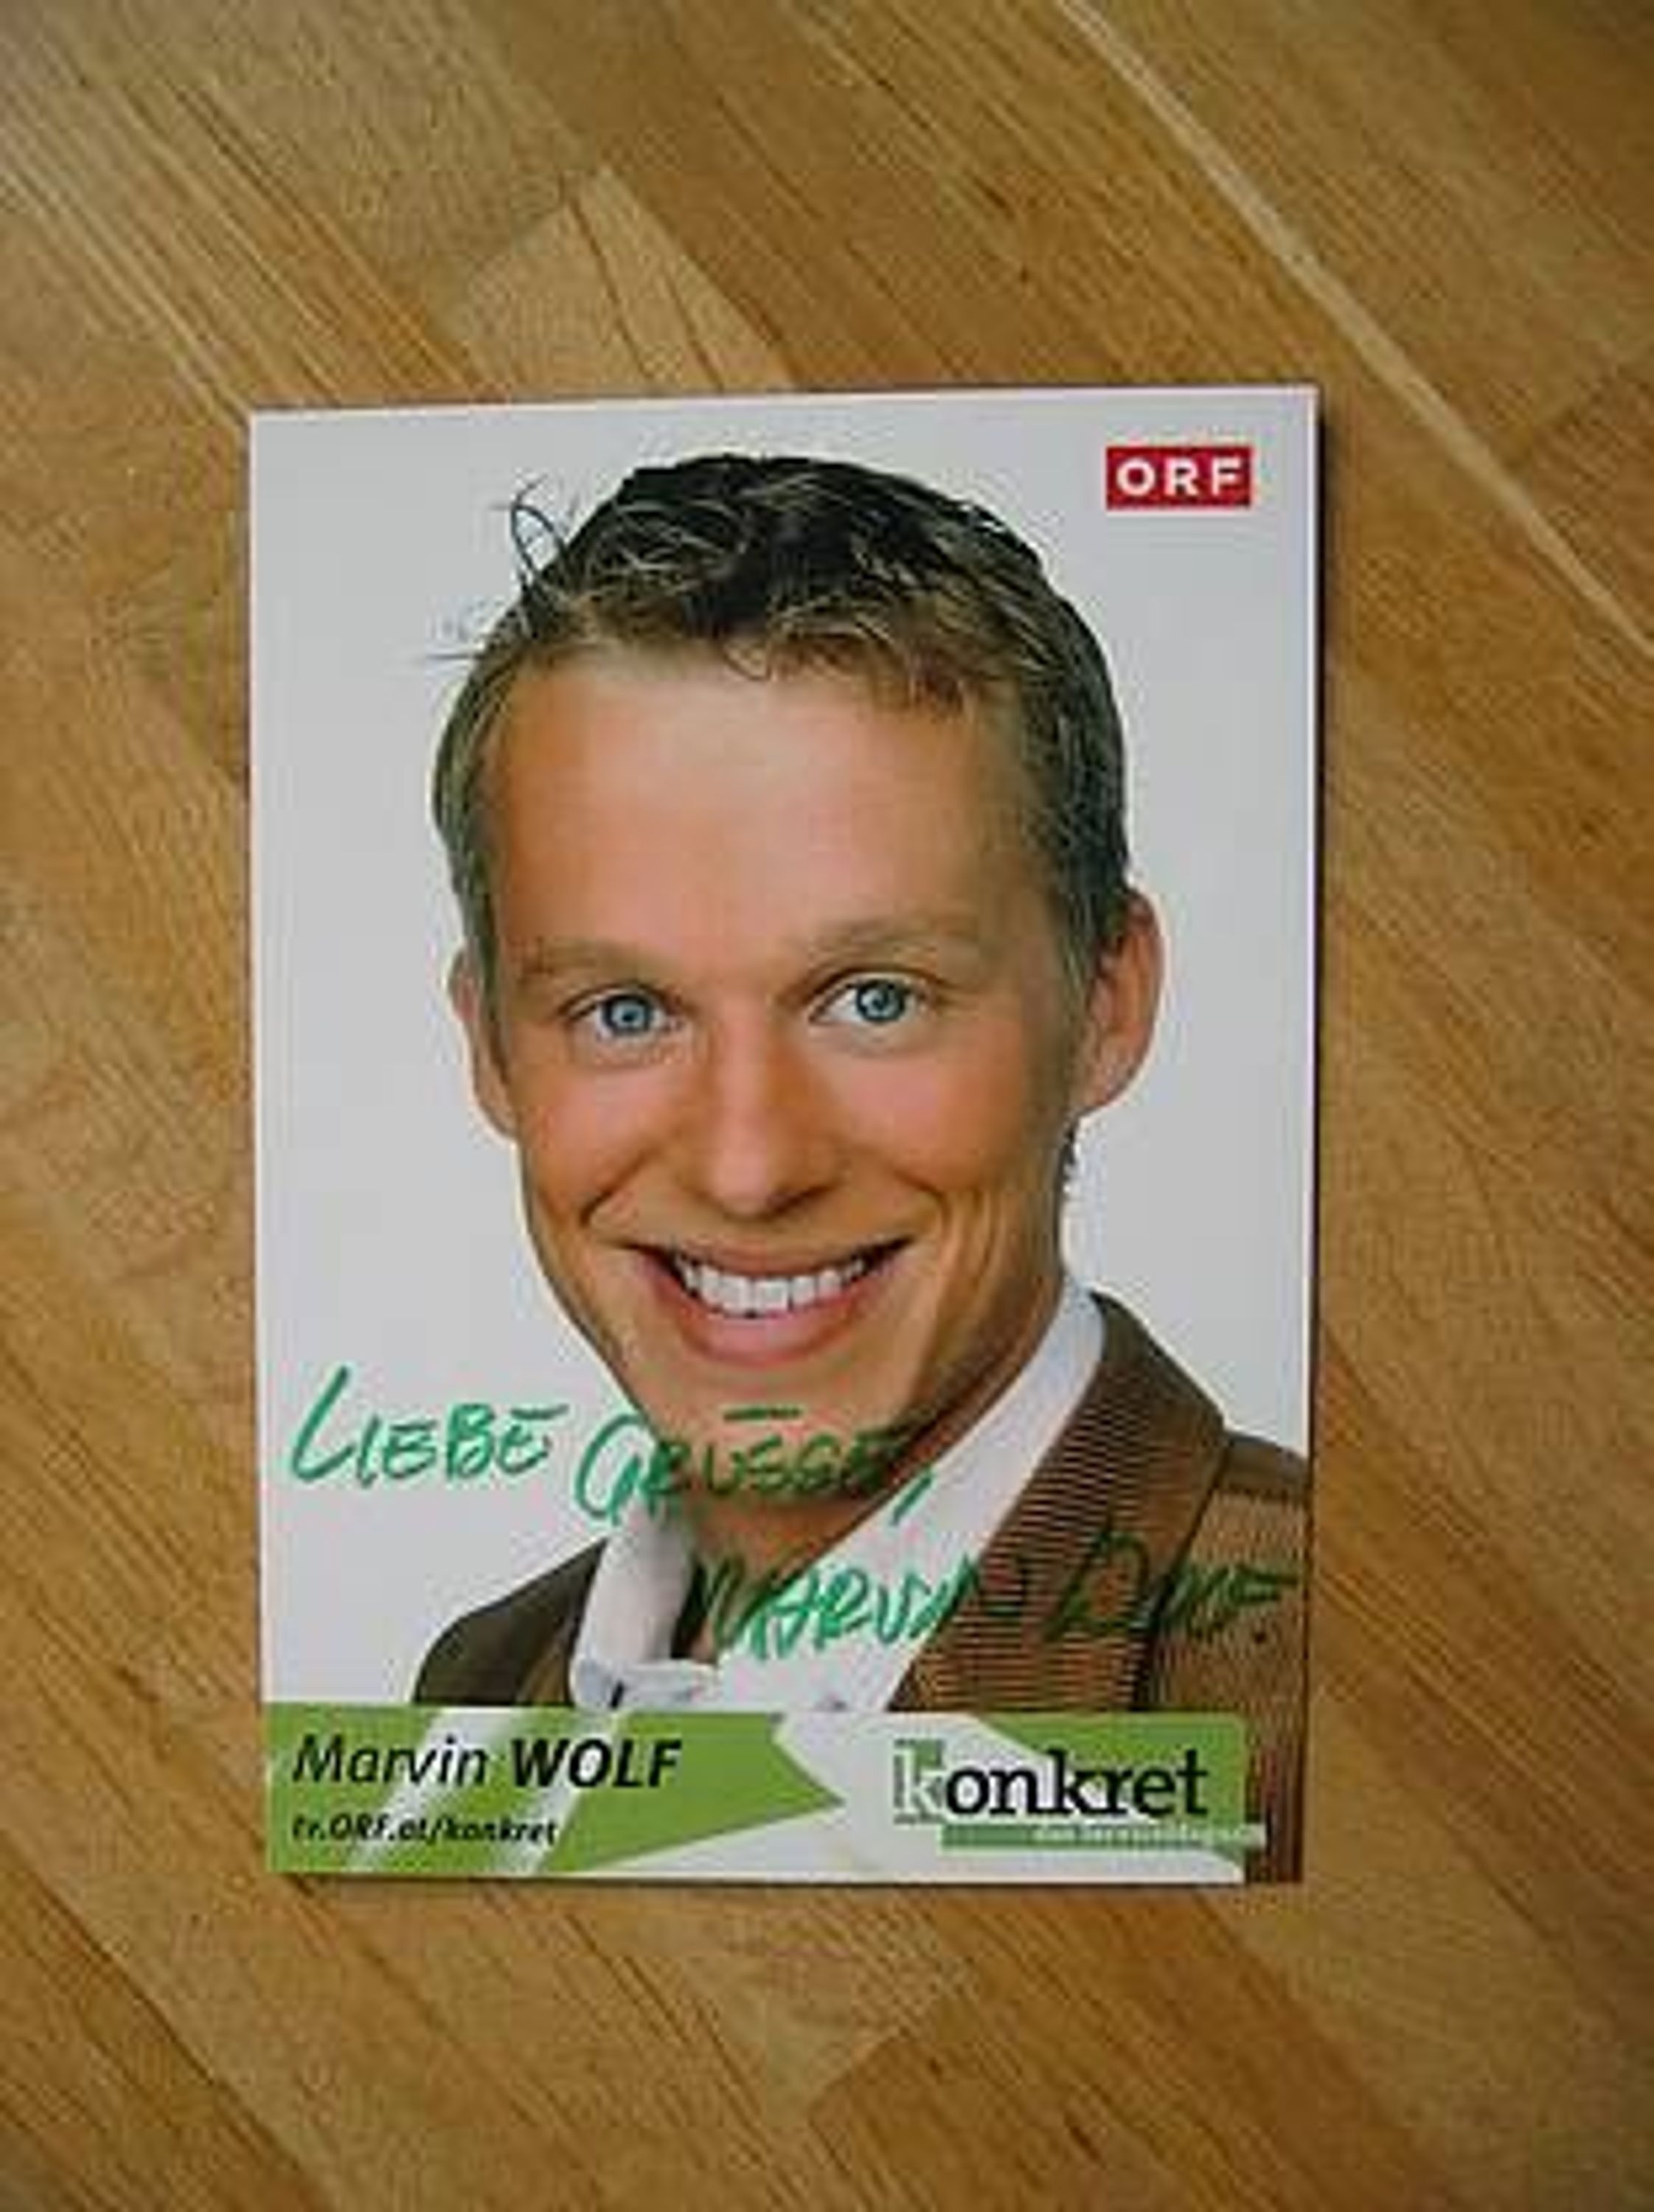 ORF Fernsehmoderator <b>Marvin Wolf</b> - handsign. Autogramm! gebraucht kaufen bei ... - 27035584